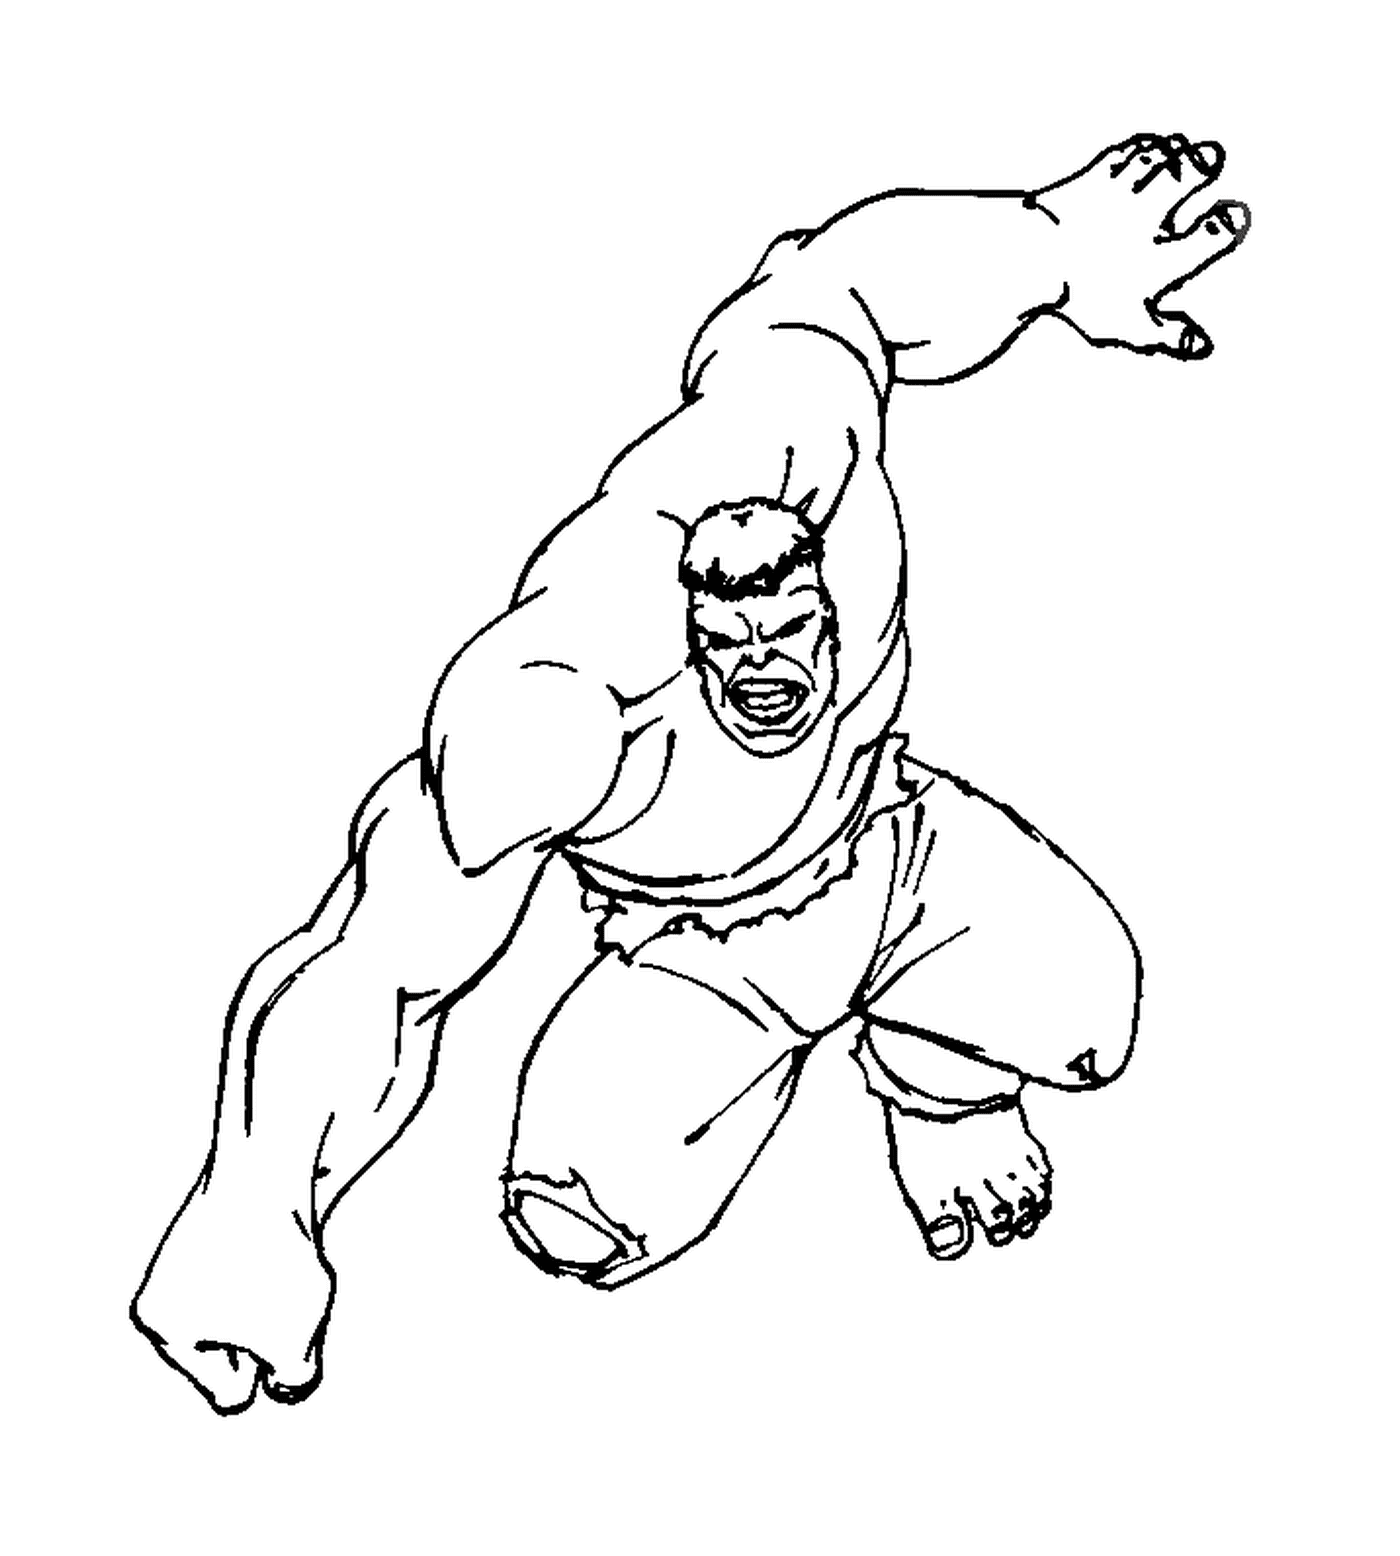  Hulk nel bel mezzo di un salto 